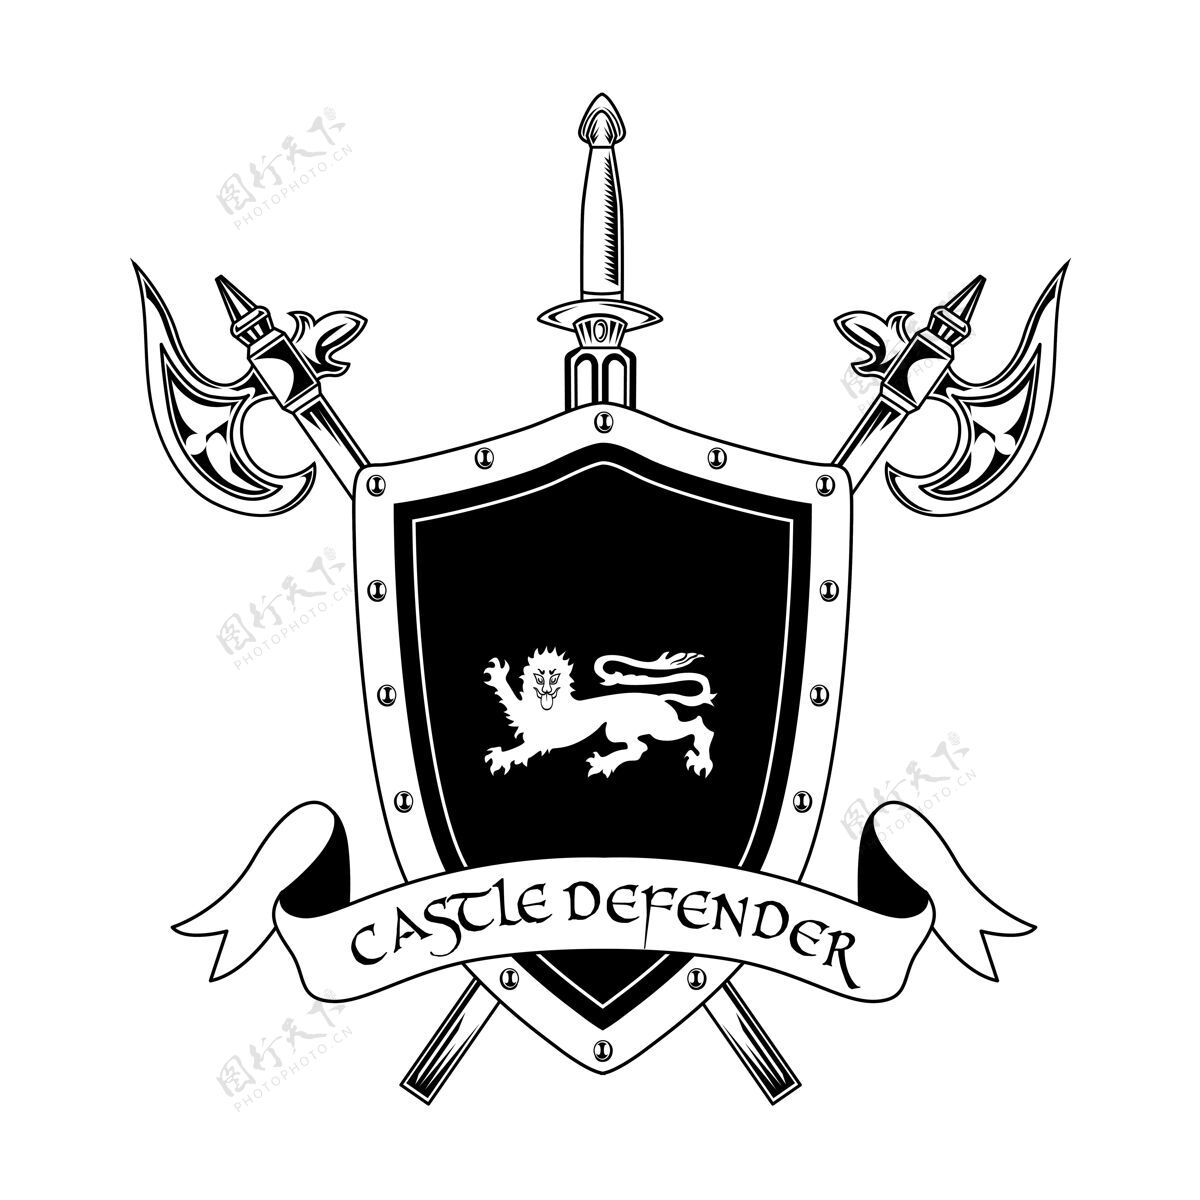 在线中世纪骑士武器矢量插图交叉轴 剑 盾牌和城堡防御者文本守卫和保护概念的徽章或徽章模板战斗运动团队